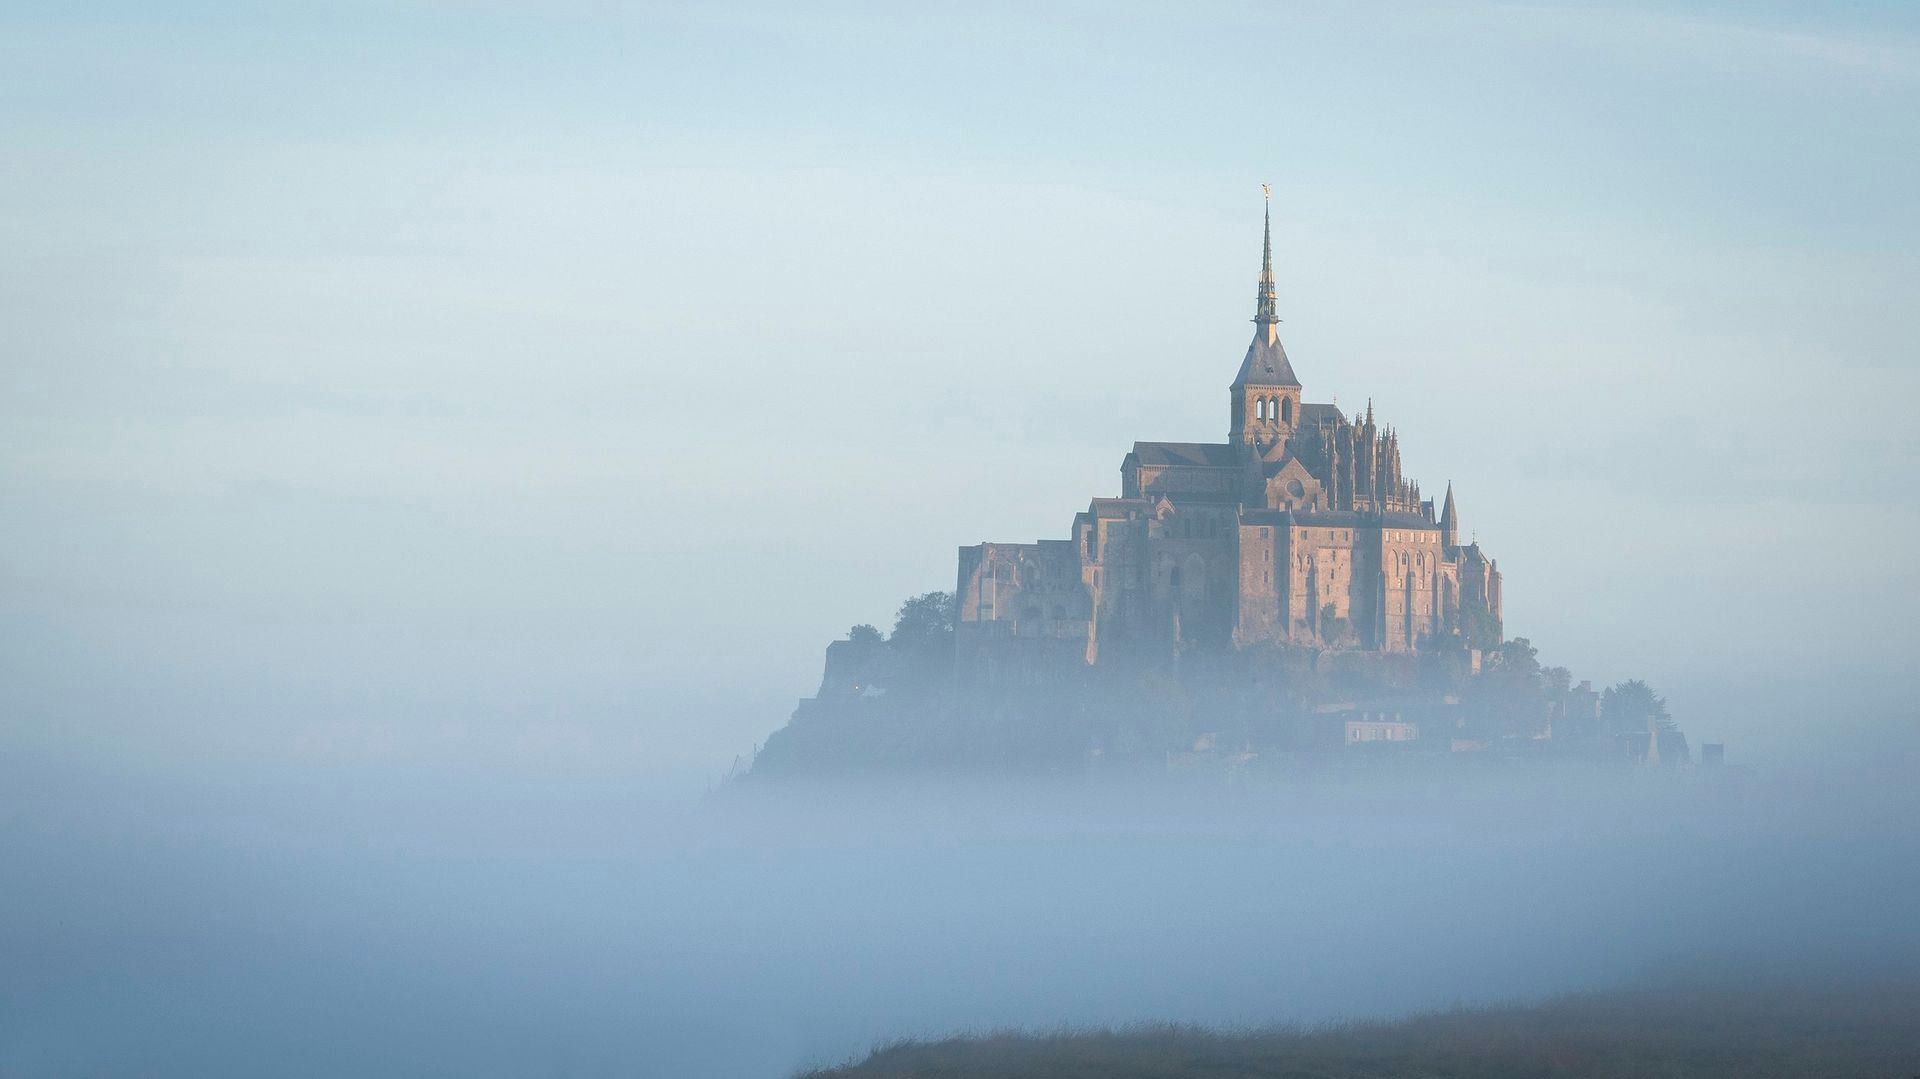 Рассветный туман вокруг замка Мон-Сен-Мишель, Франция. Фотограф NataPoda